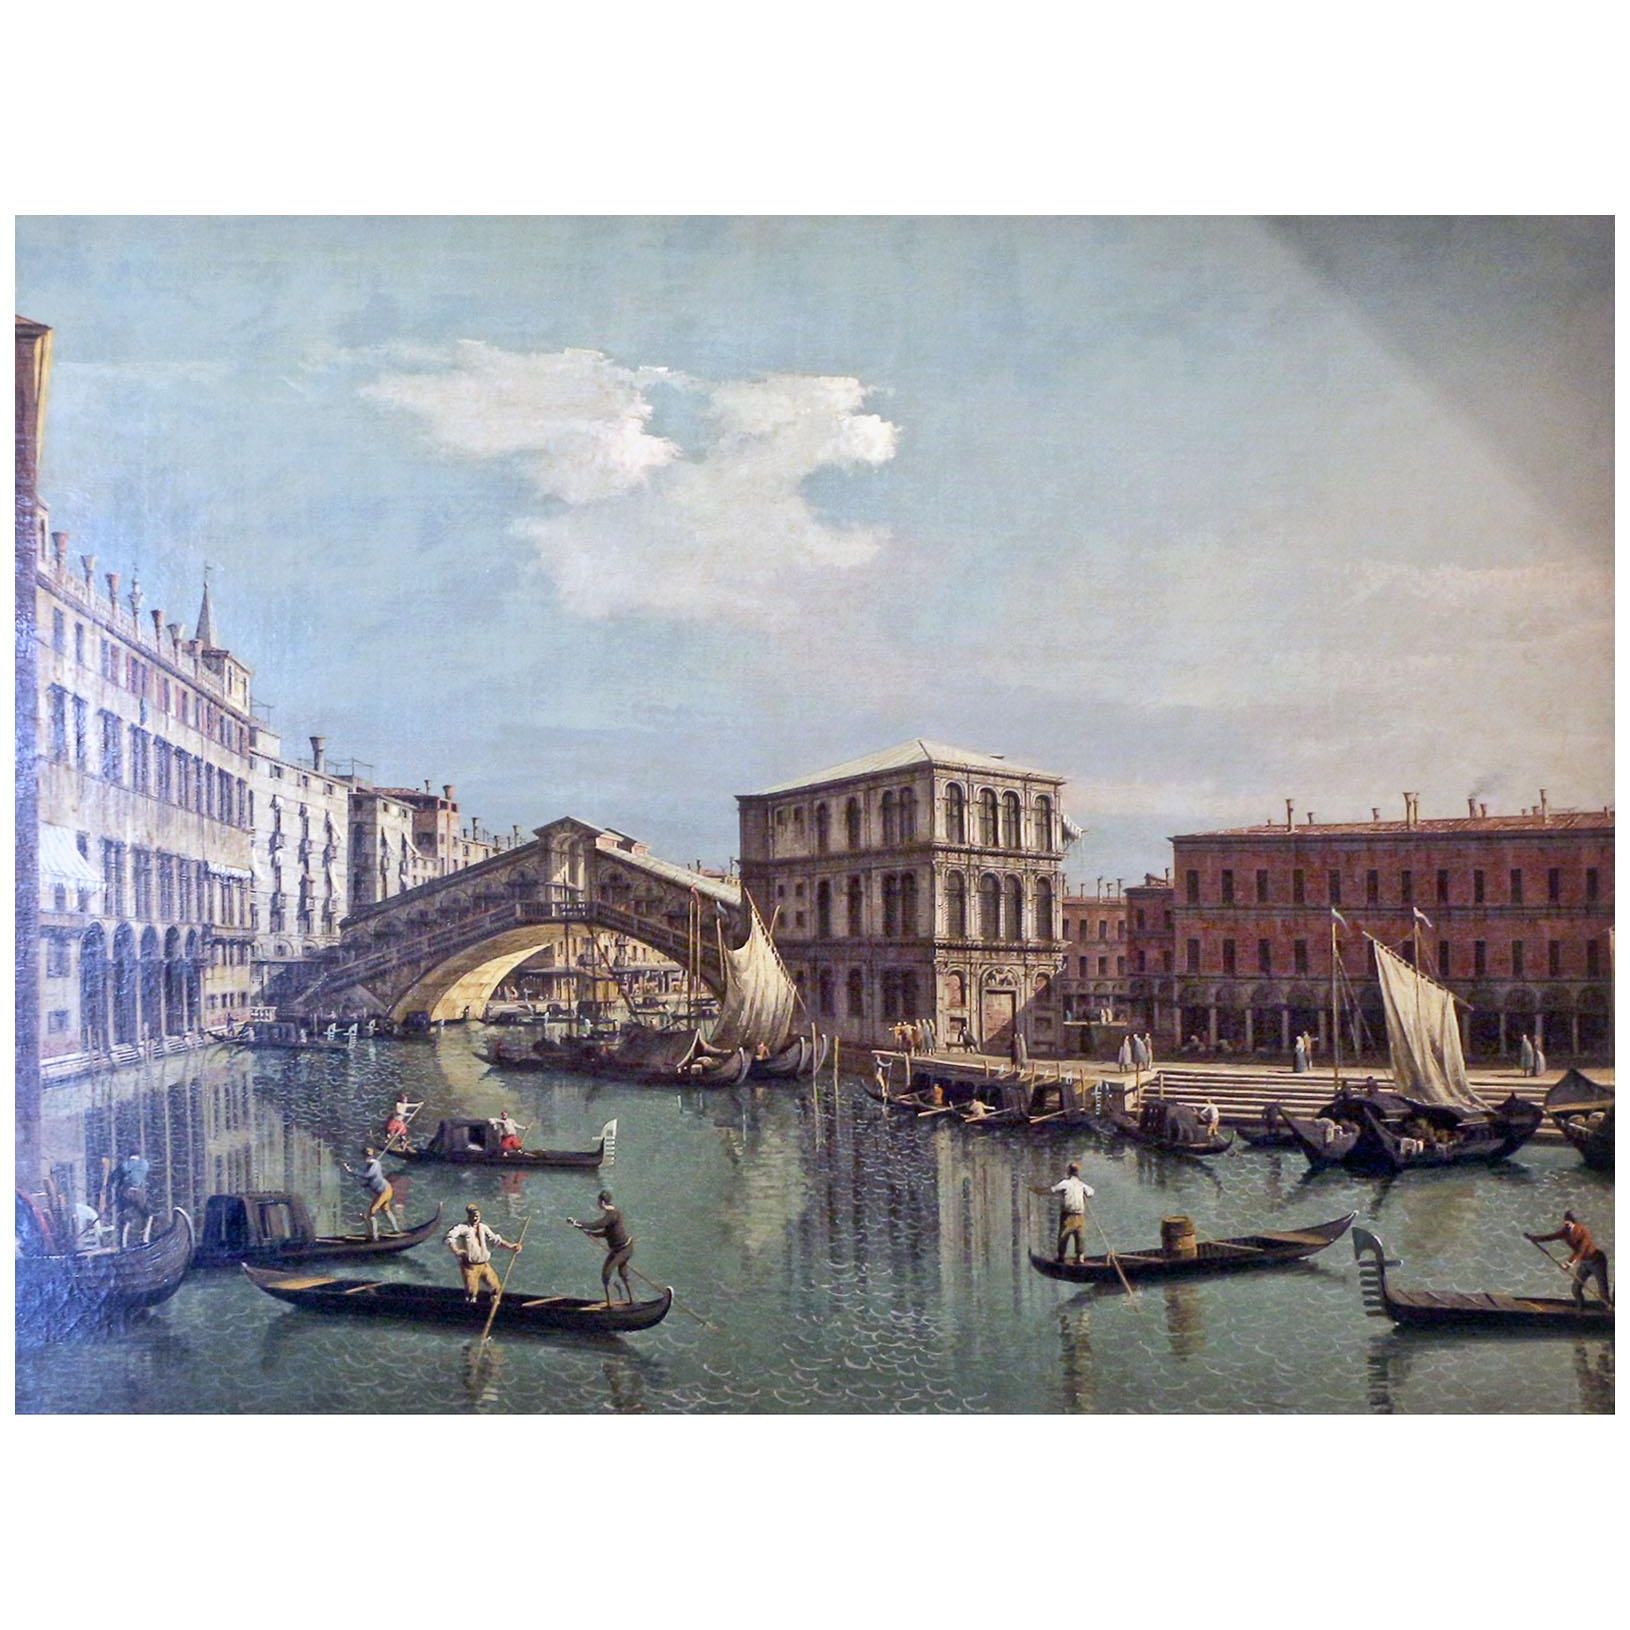 Bernardo Bellotto. Il ponte di rialto. 1739-1742. Louvre Paris